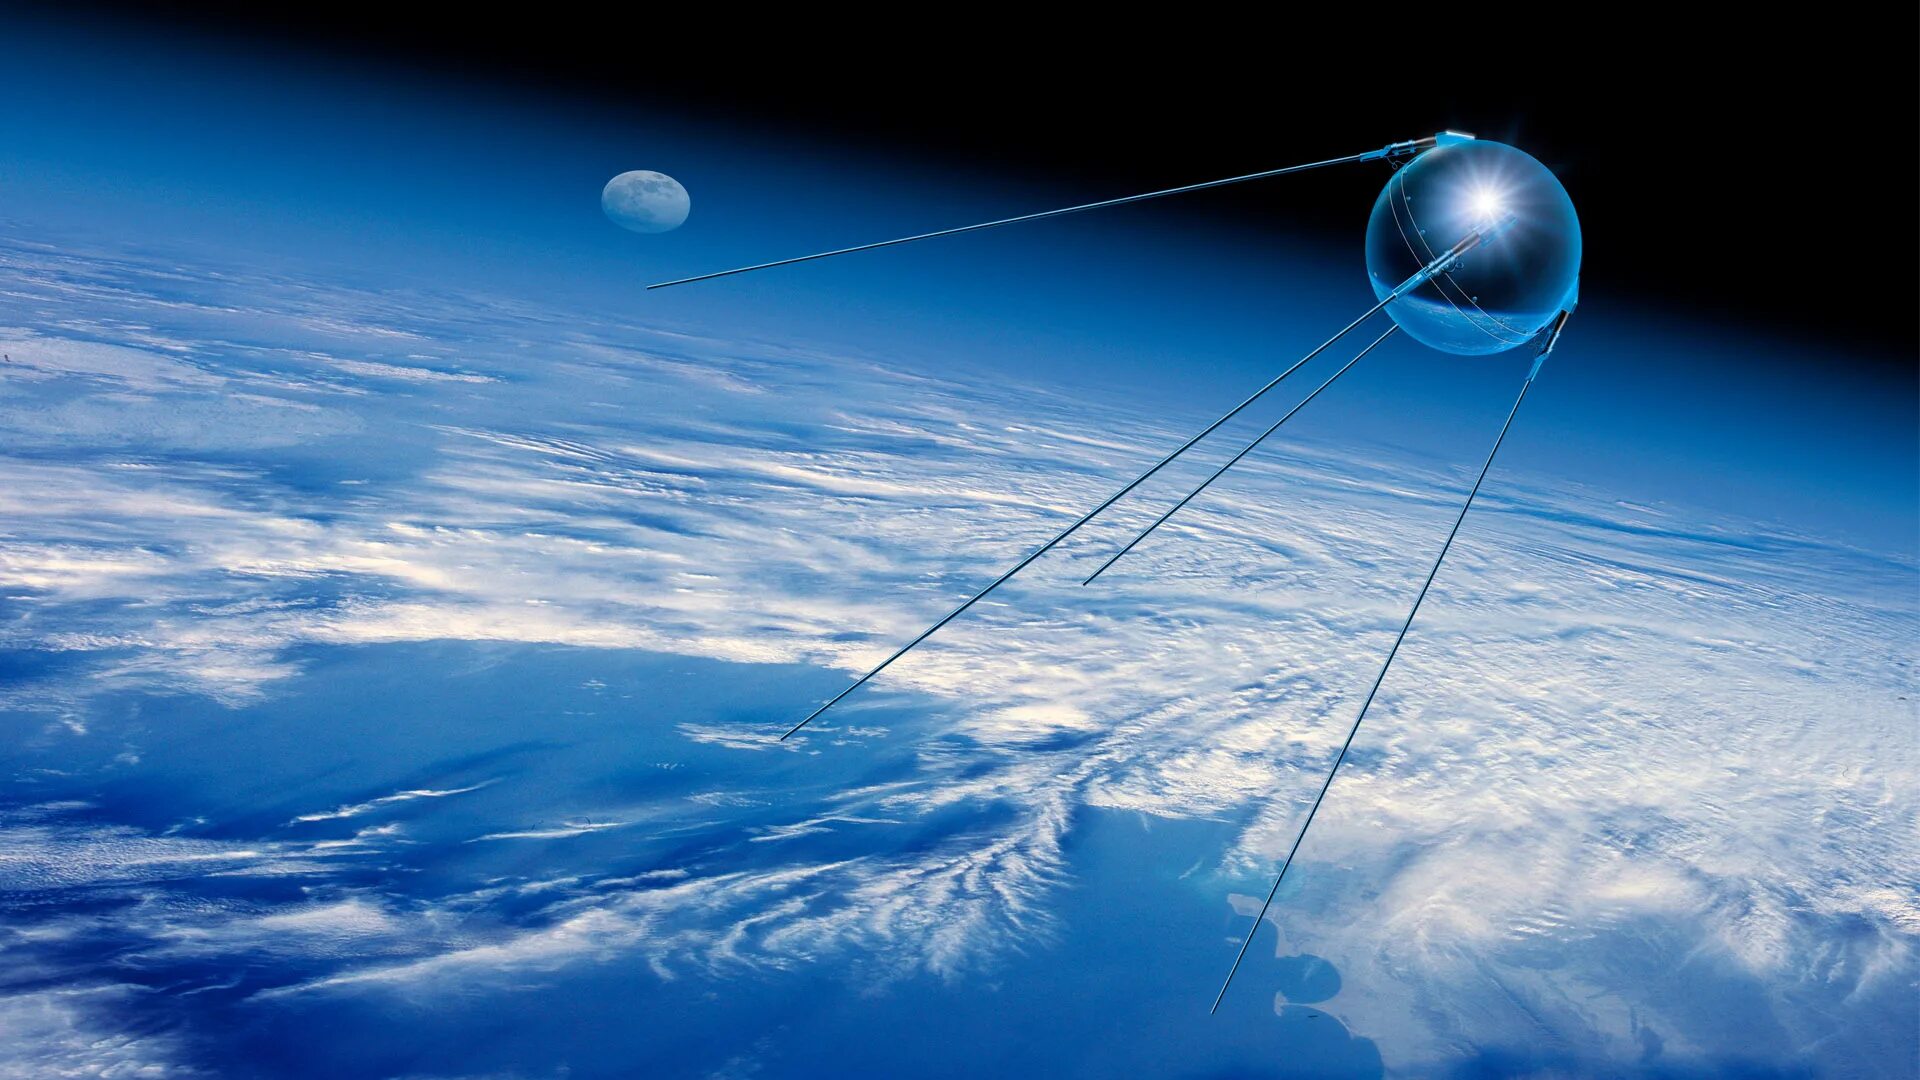 Спутник 1 первый искусственный Спутник земли. «Спутник-1», первый искуссттвенный Спутник. Первый искусственный Спутник земли 1957. ПС-1 Спутник. Искусственный спутник земли на небе